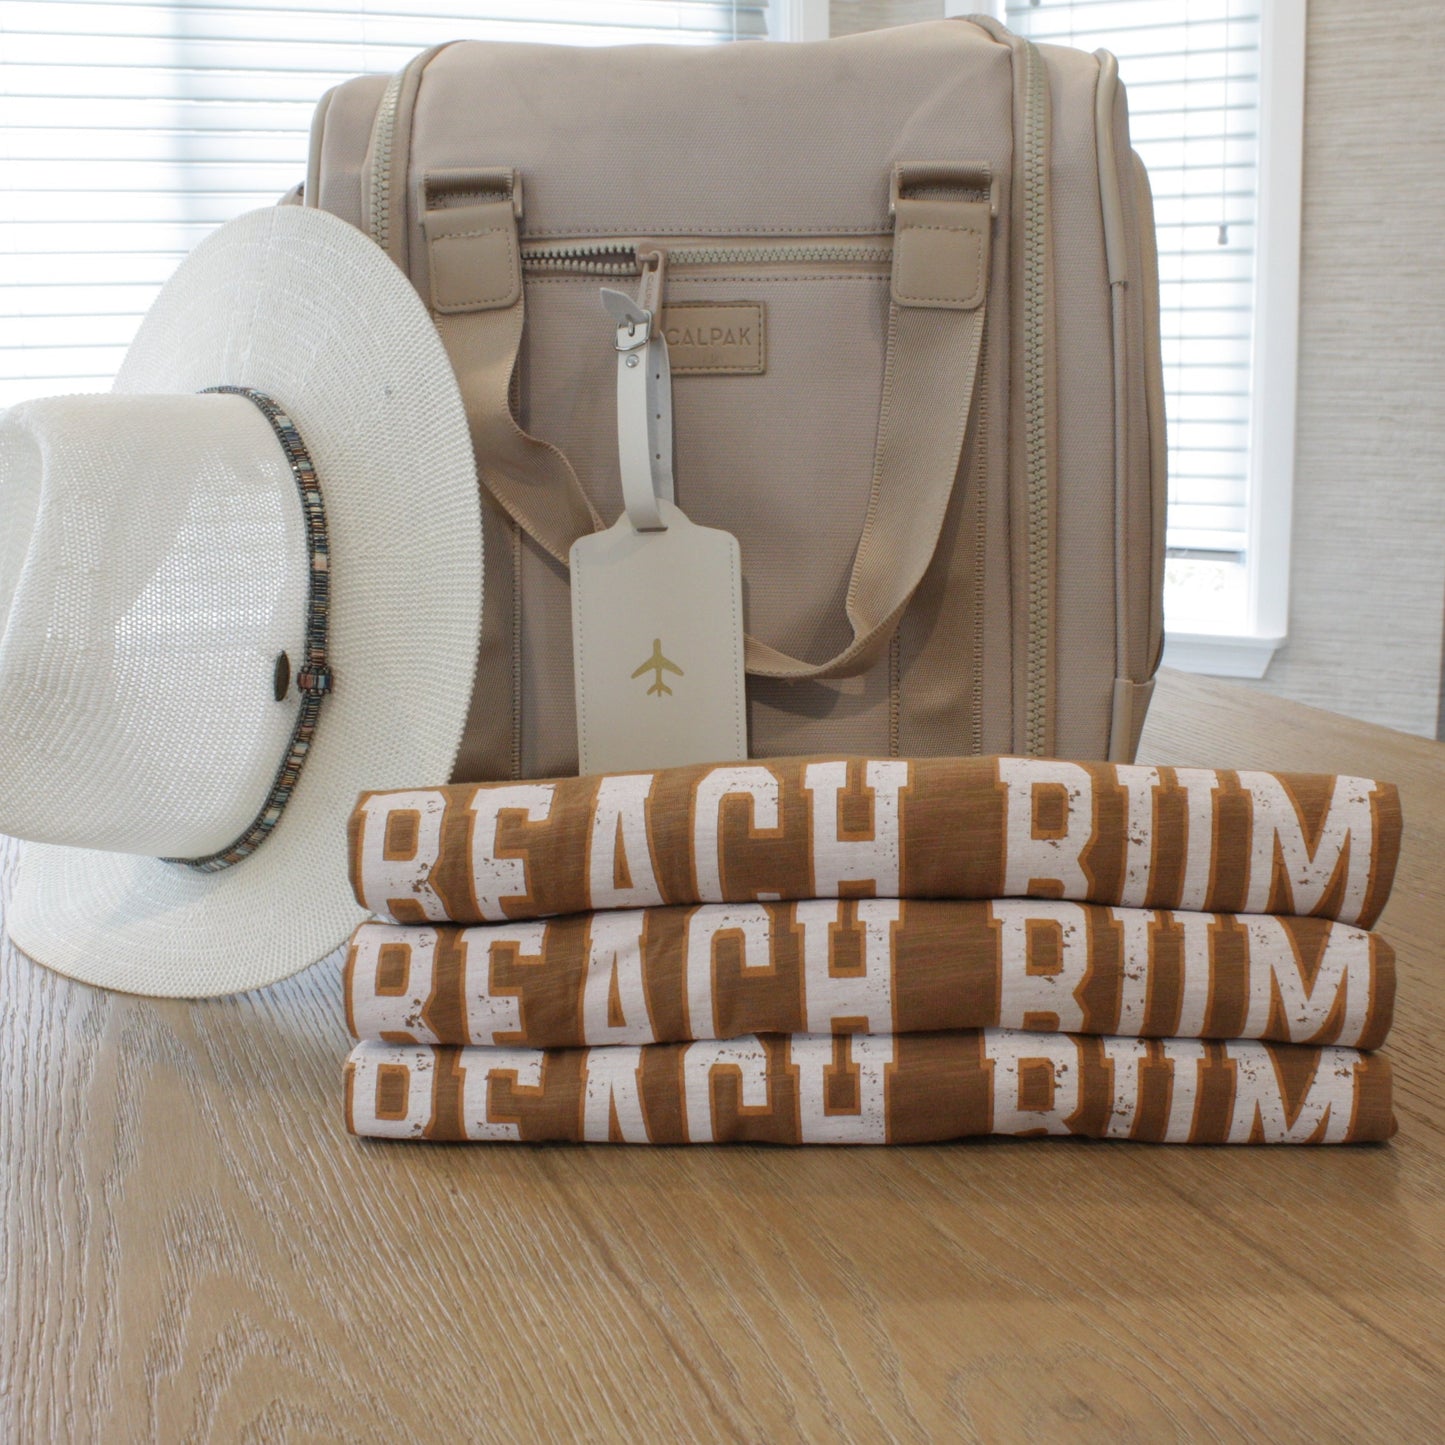 Beach Bum T-shirt